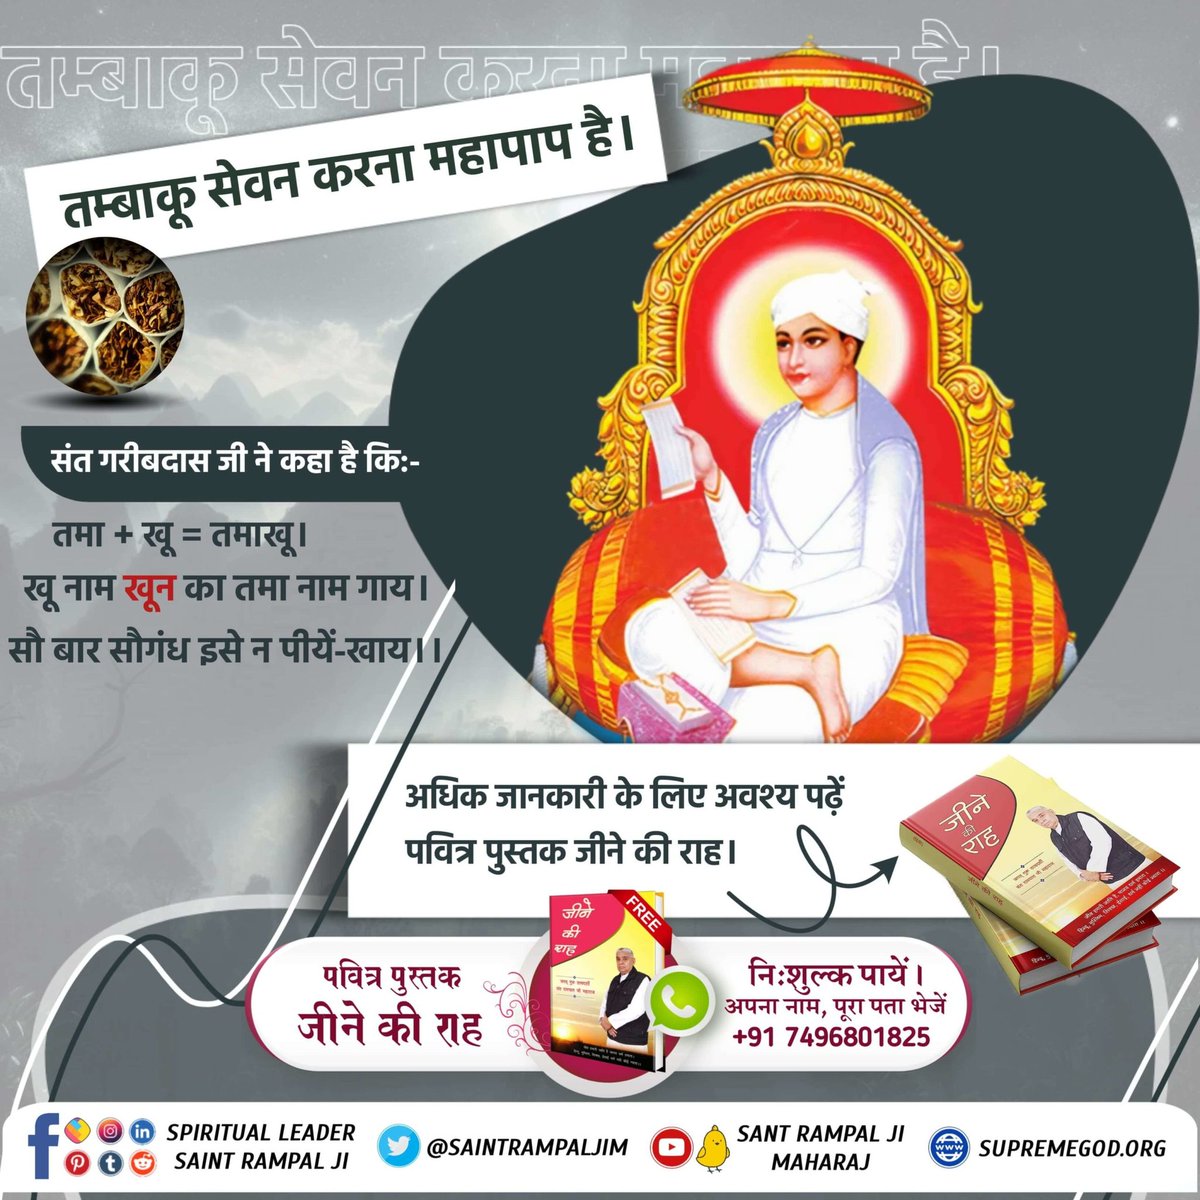 #सबपापोंमें_प्रमुख_पाप_तंबाखू तम्बाकू सेवन करना महापाप है। संत गरीबदास जी ने कहा है कि:- तमा + खू = तमाखू। खू नाम खून का तमा नाम गाय। सौ बार सौगंध इसे न पीयें-खाय।। अधिक जानकारी के लिए अवश्य पढ़ें पवित्र पुस्तक जीने की राह। Sant Rampal Ji Maharaj